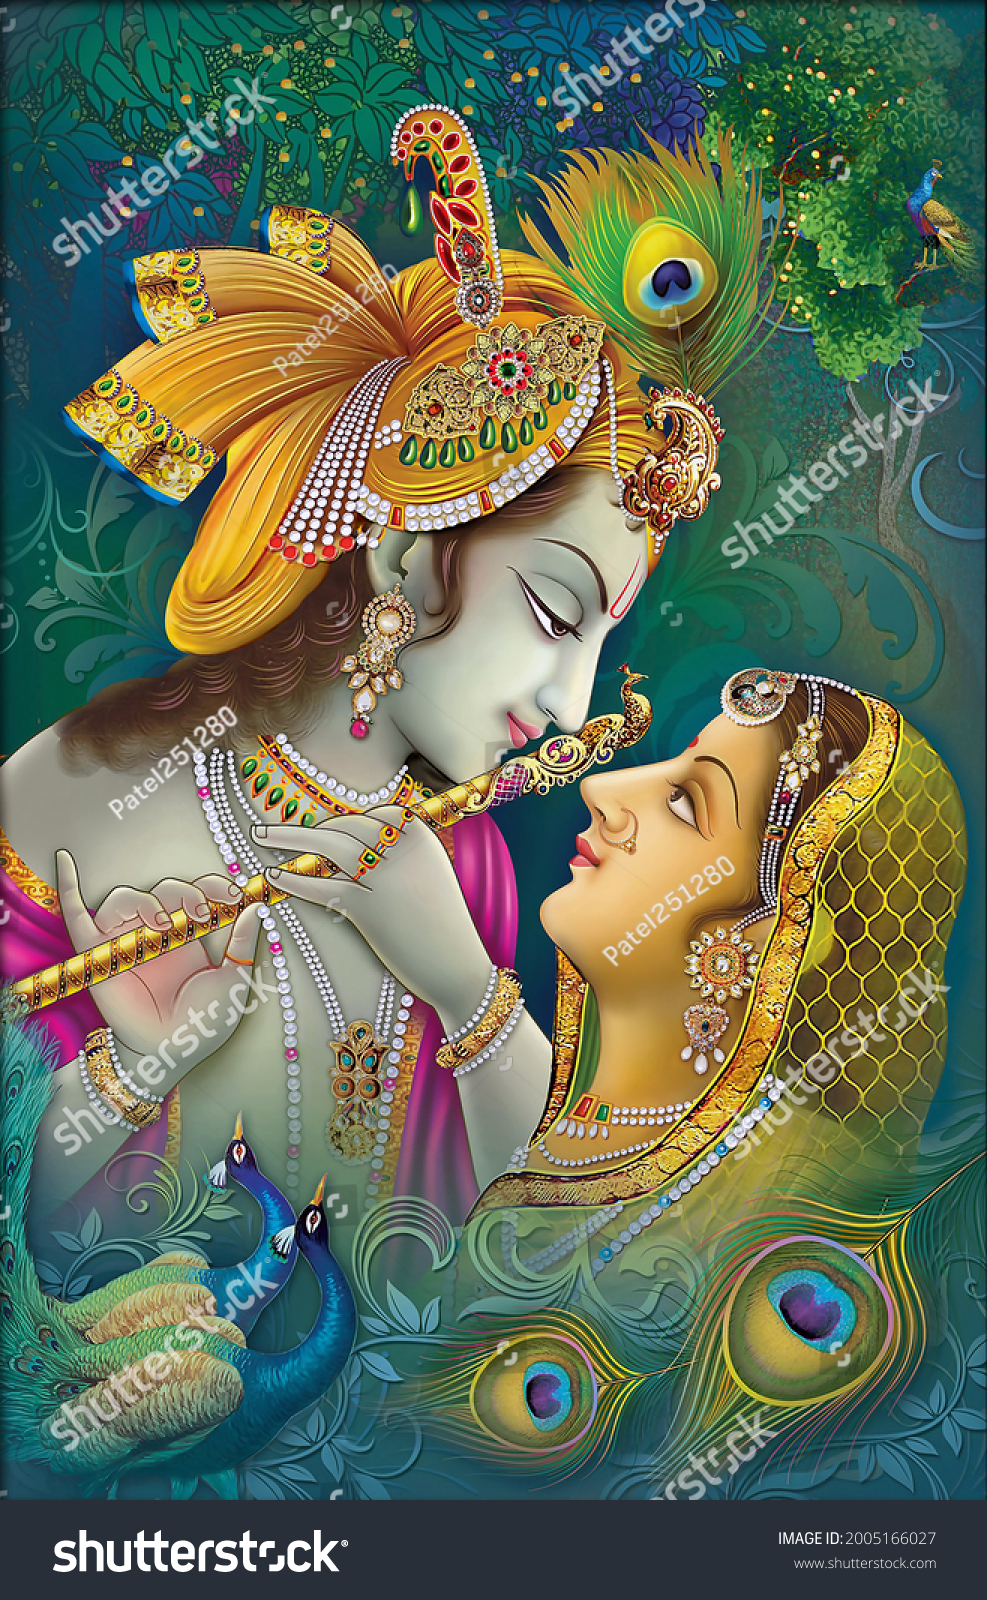 Krishna Images, Stock Photos & Vectors ...